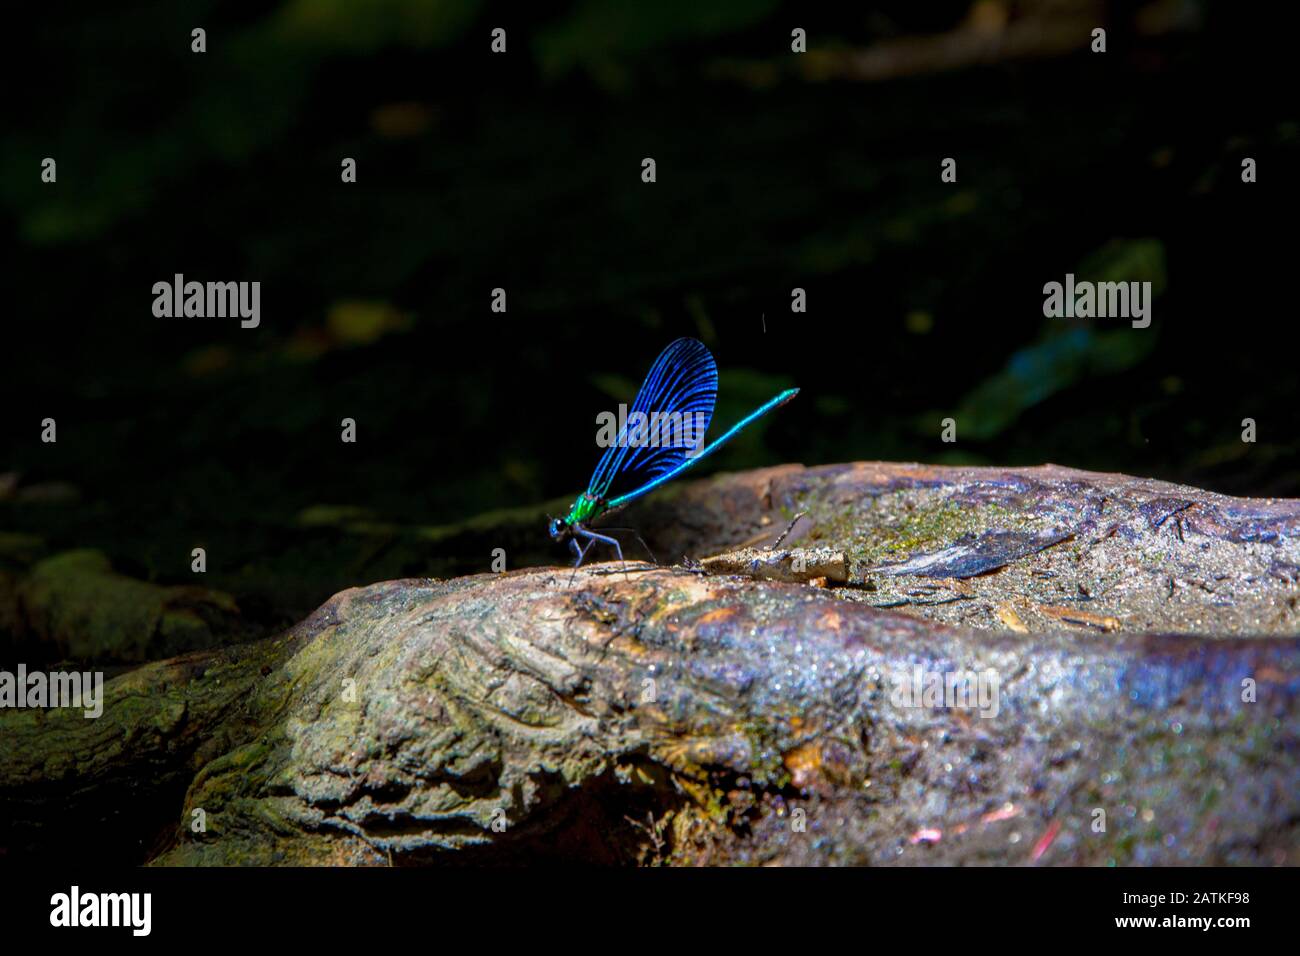 Zygoptera, mosca damselfly, libélula. Zygoptera azul (mosca damselfly, libélula) sobre el árbol en el fondo de la oscuridad Foto de stock